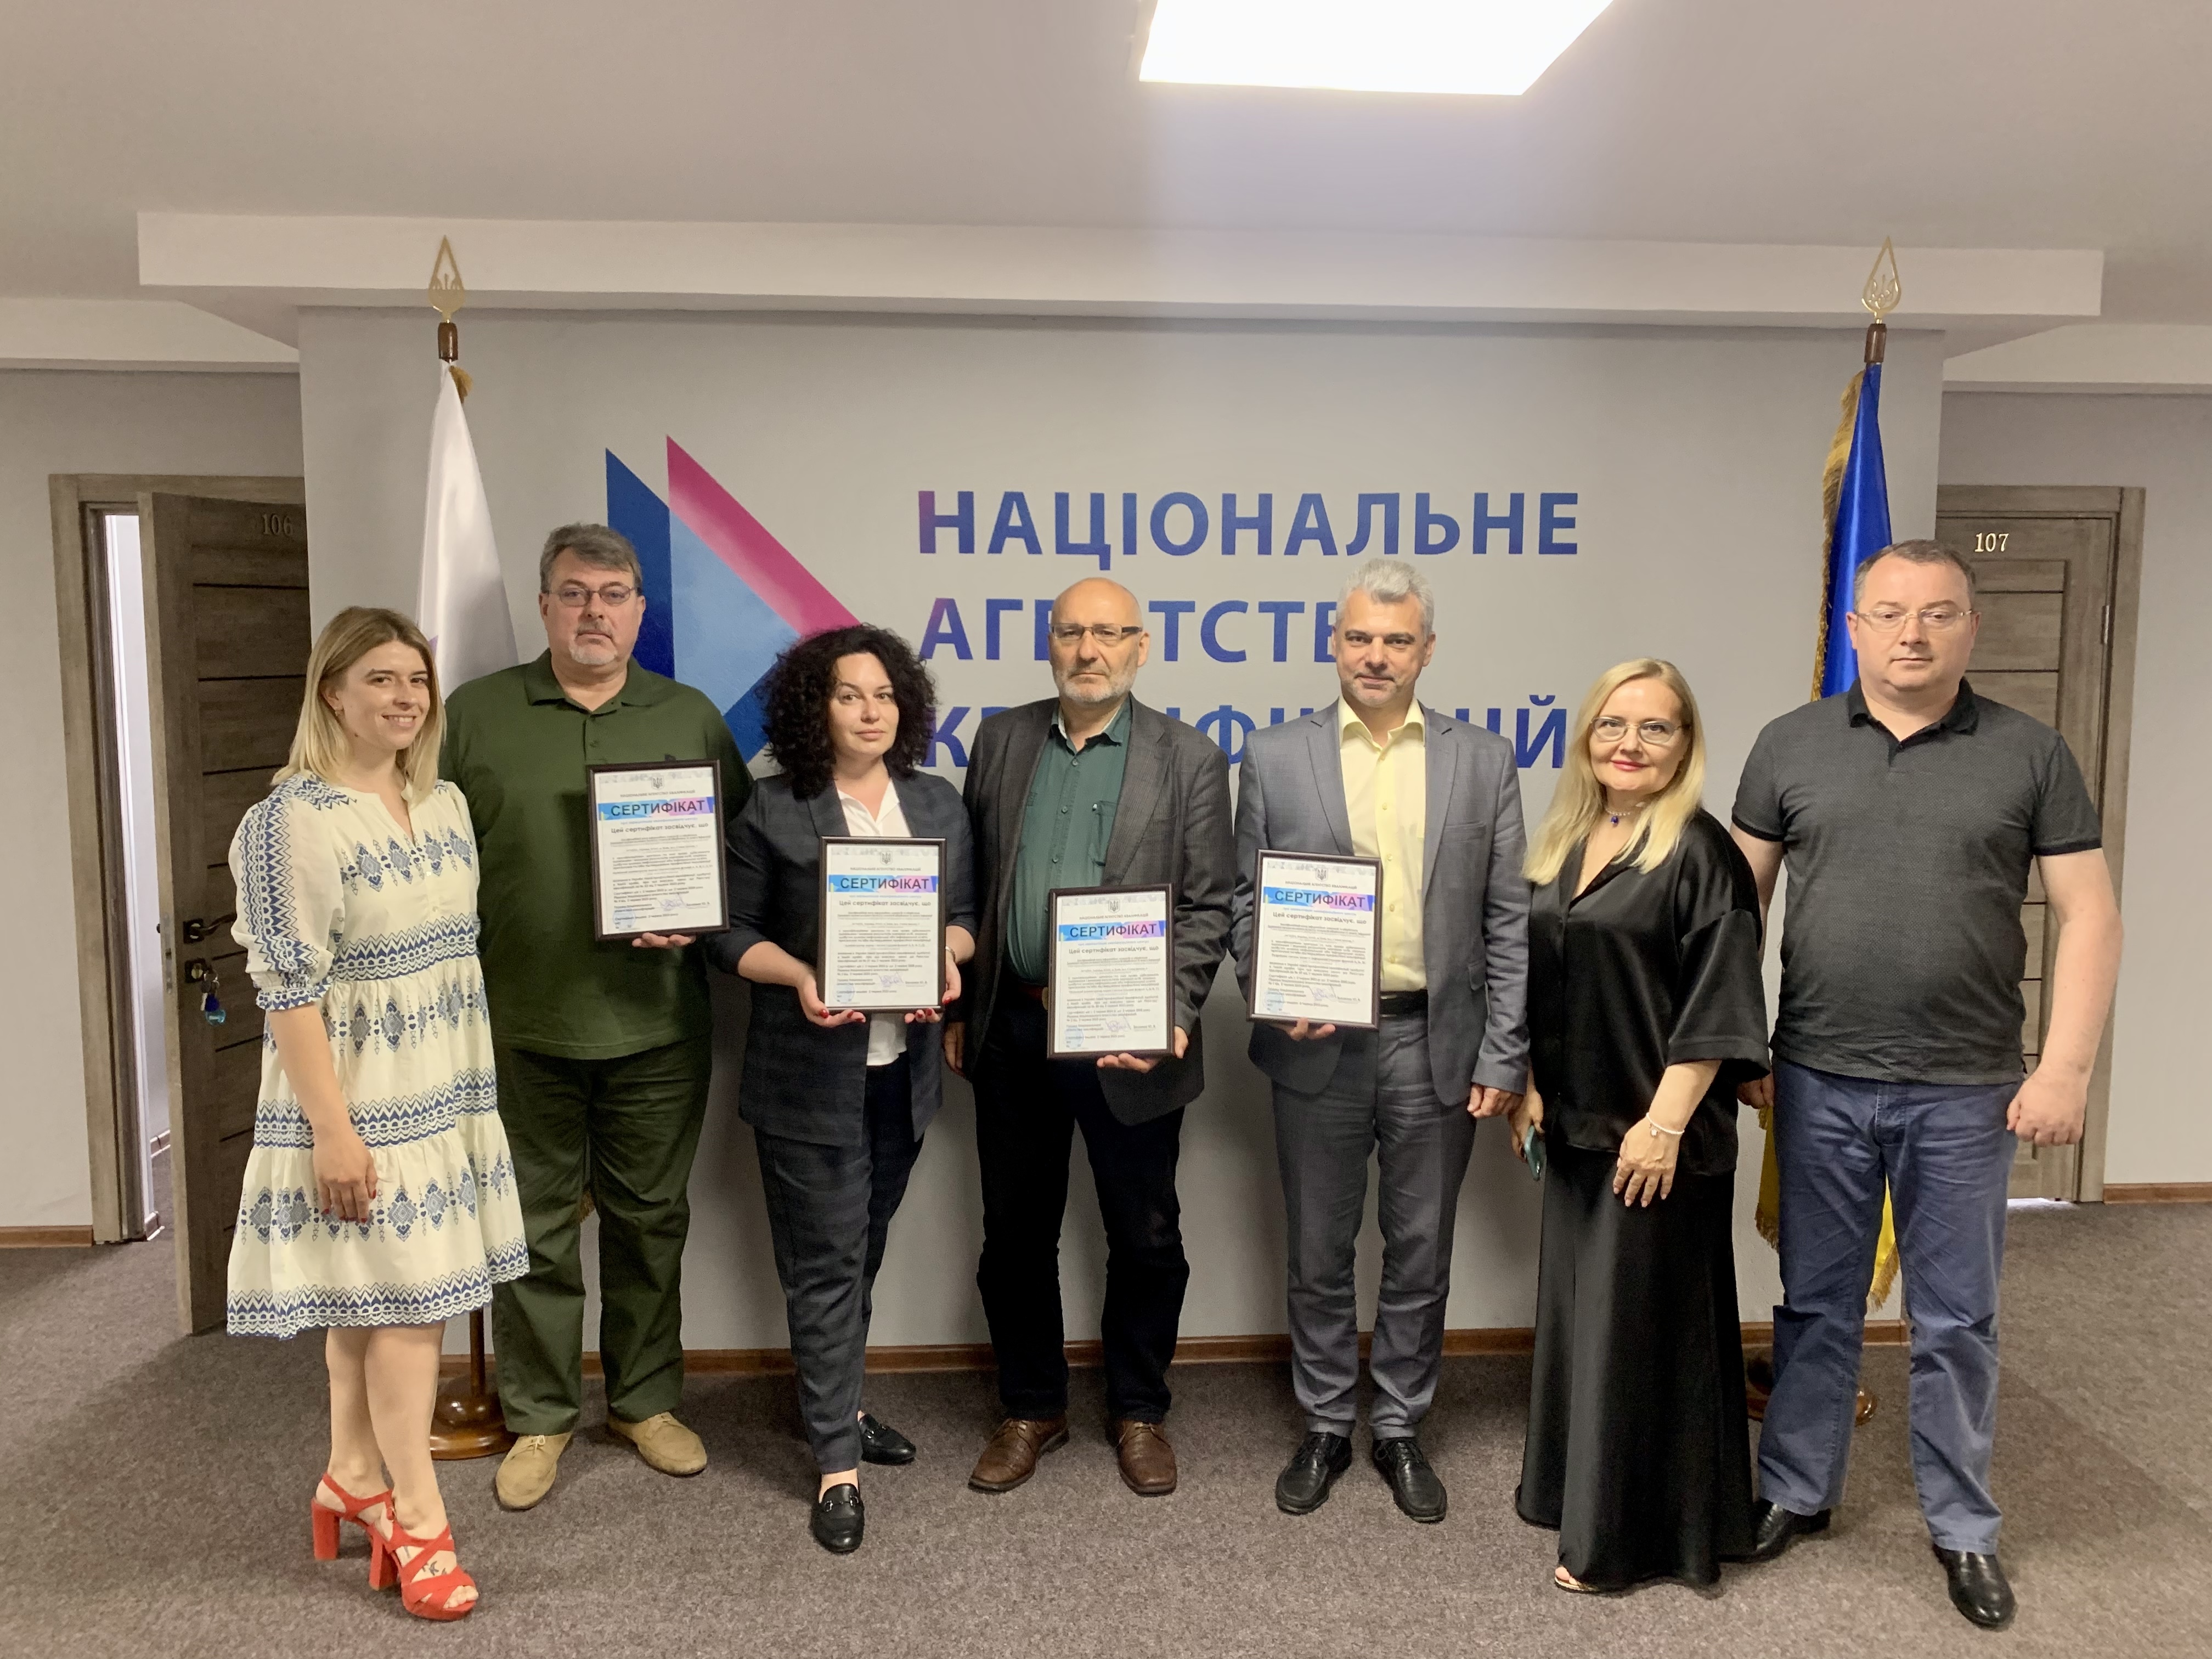 Вперше в Україні акредитований Кваліфікаційний центр ІТ та кібербезпеки - Qualification Center